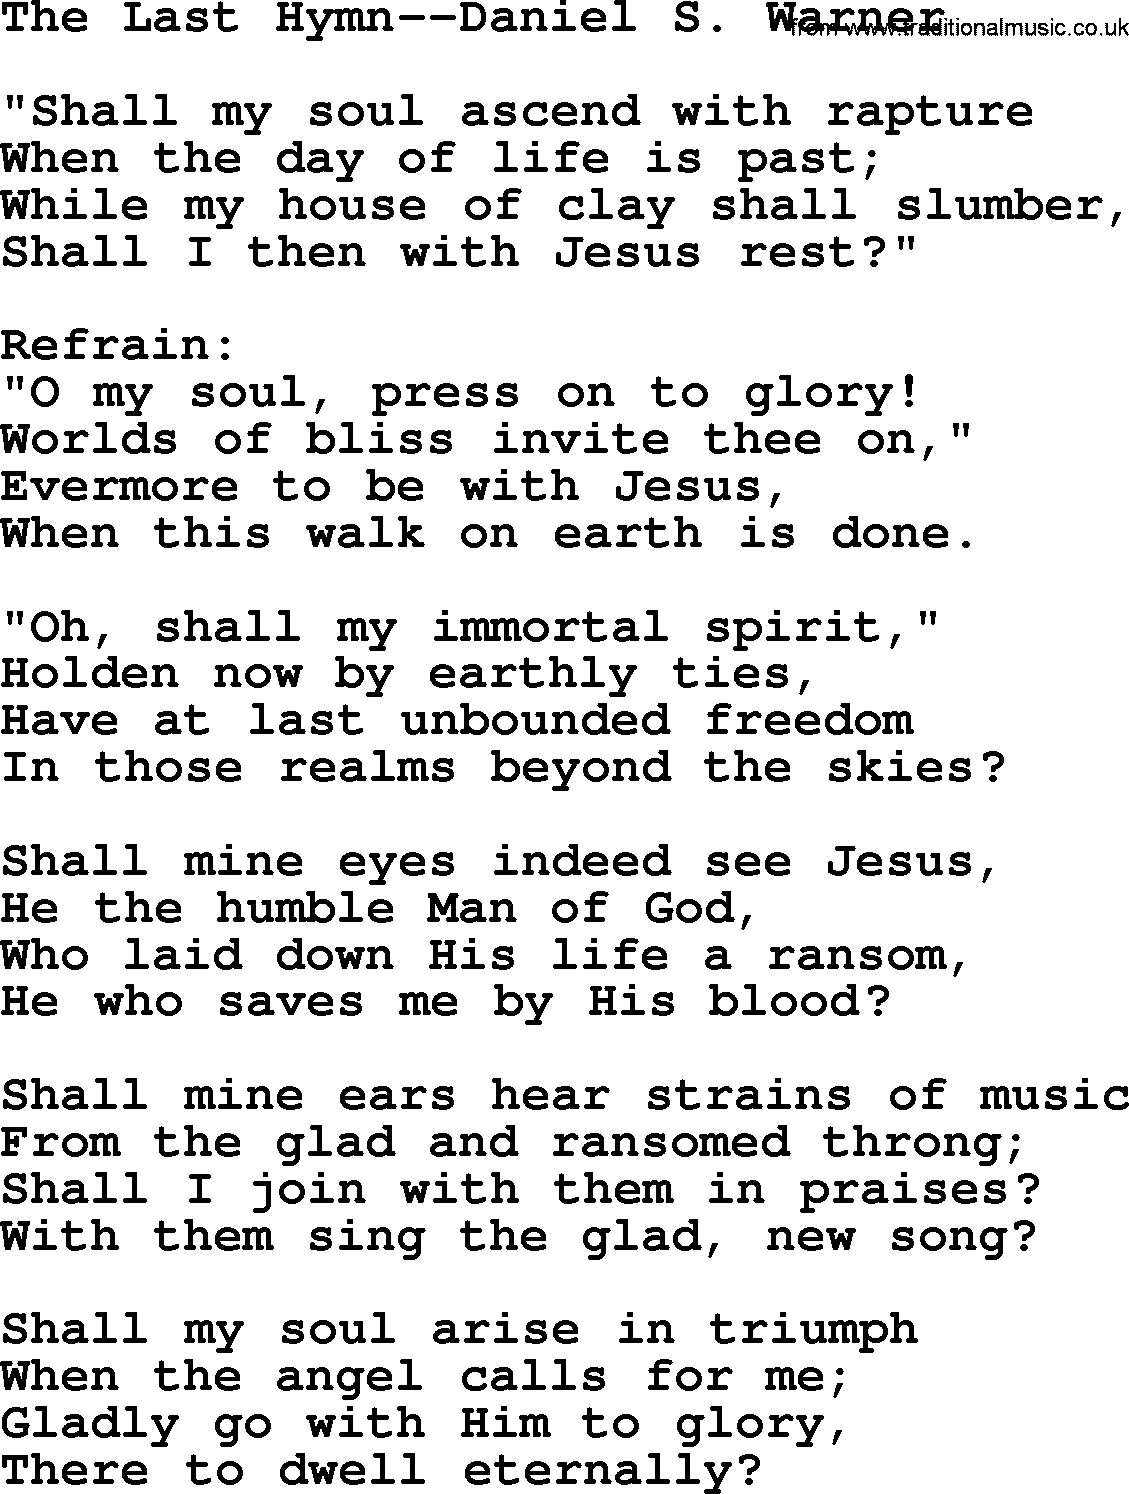 Hymns about Angels, Hymn: The Last Hymn--daniel S. Warner.txt lyrics with PDF